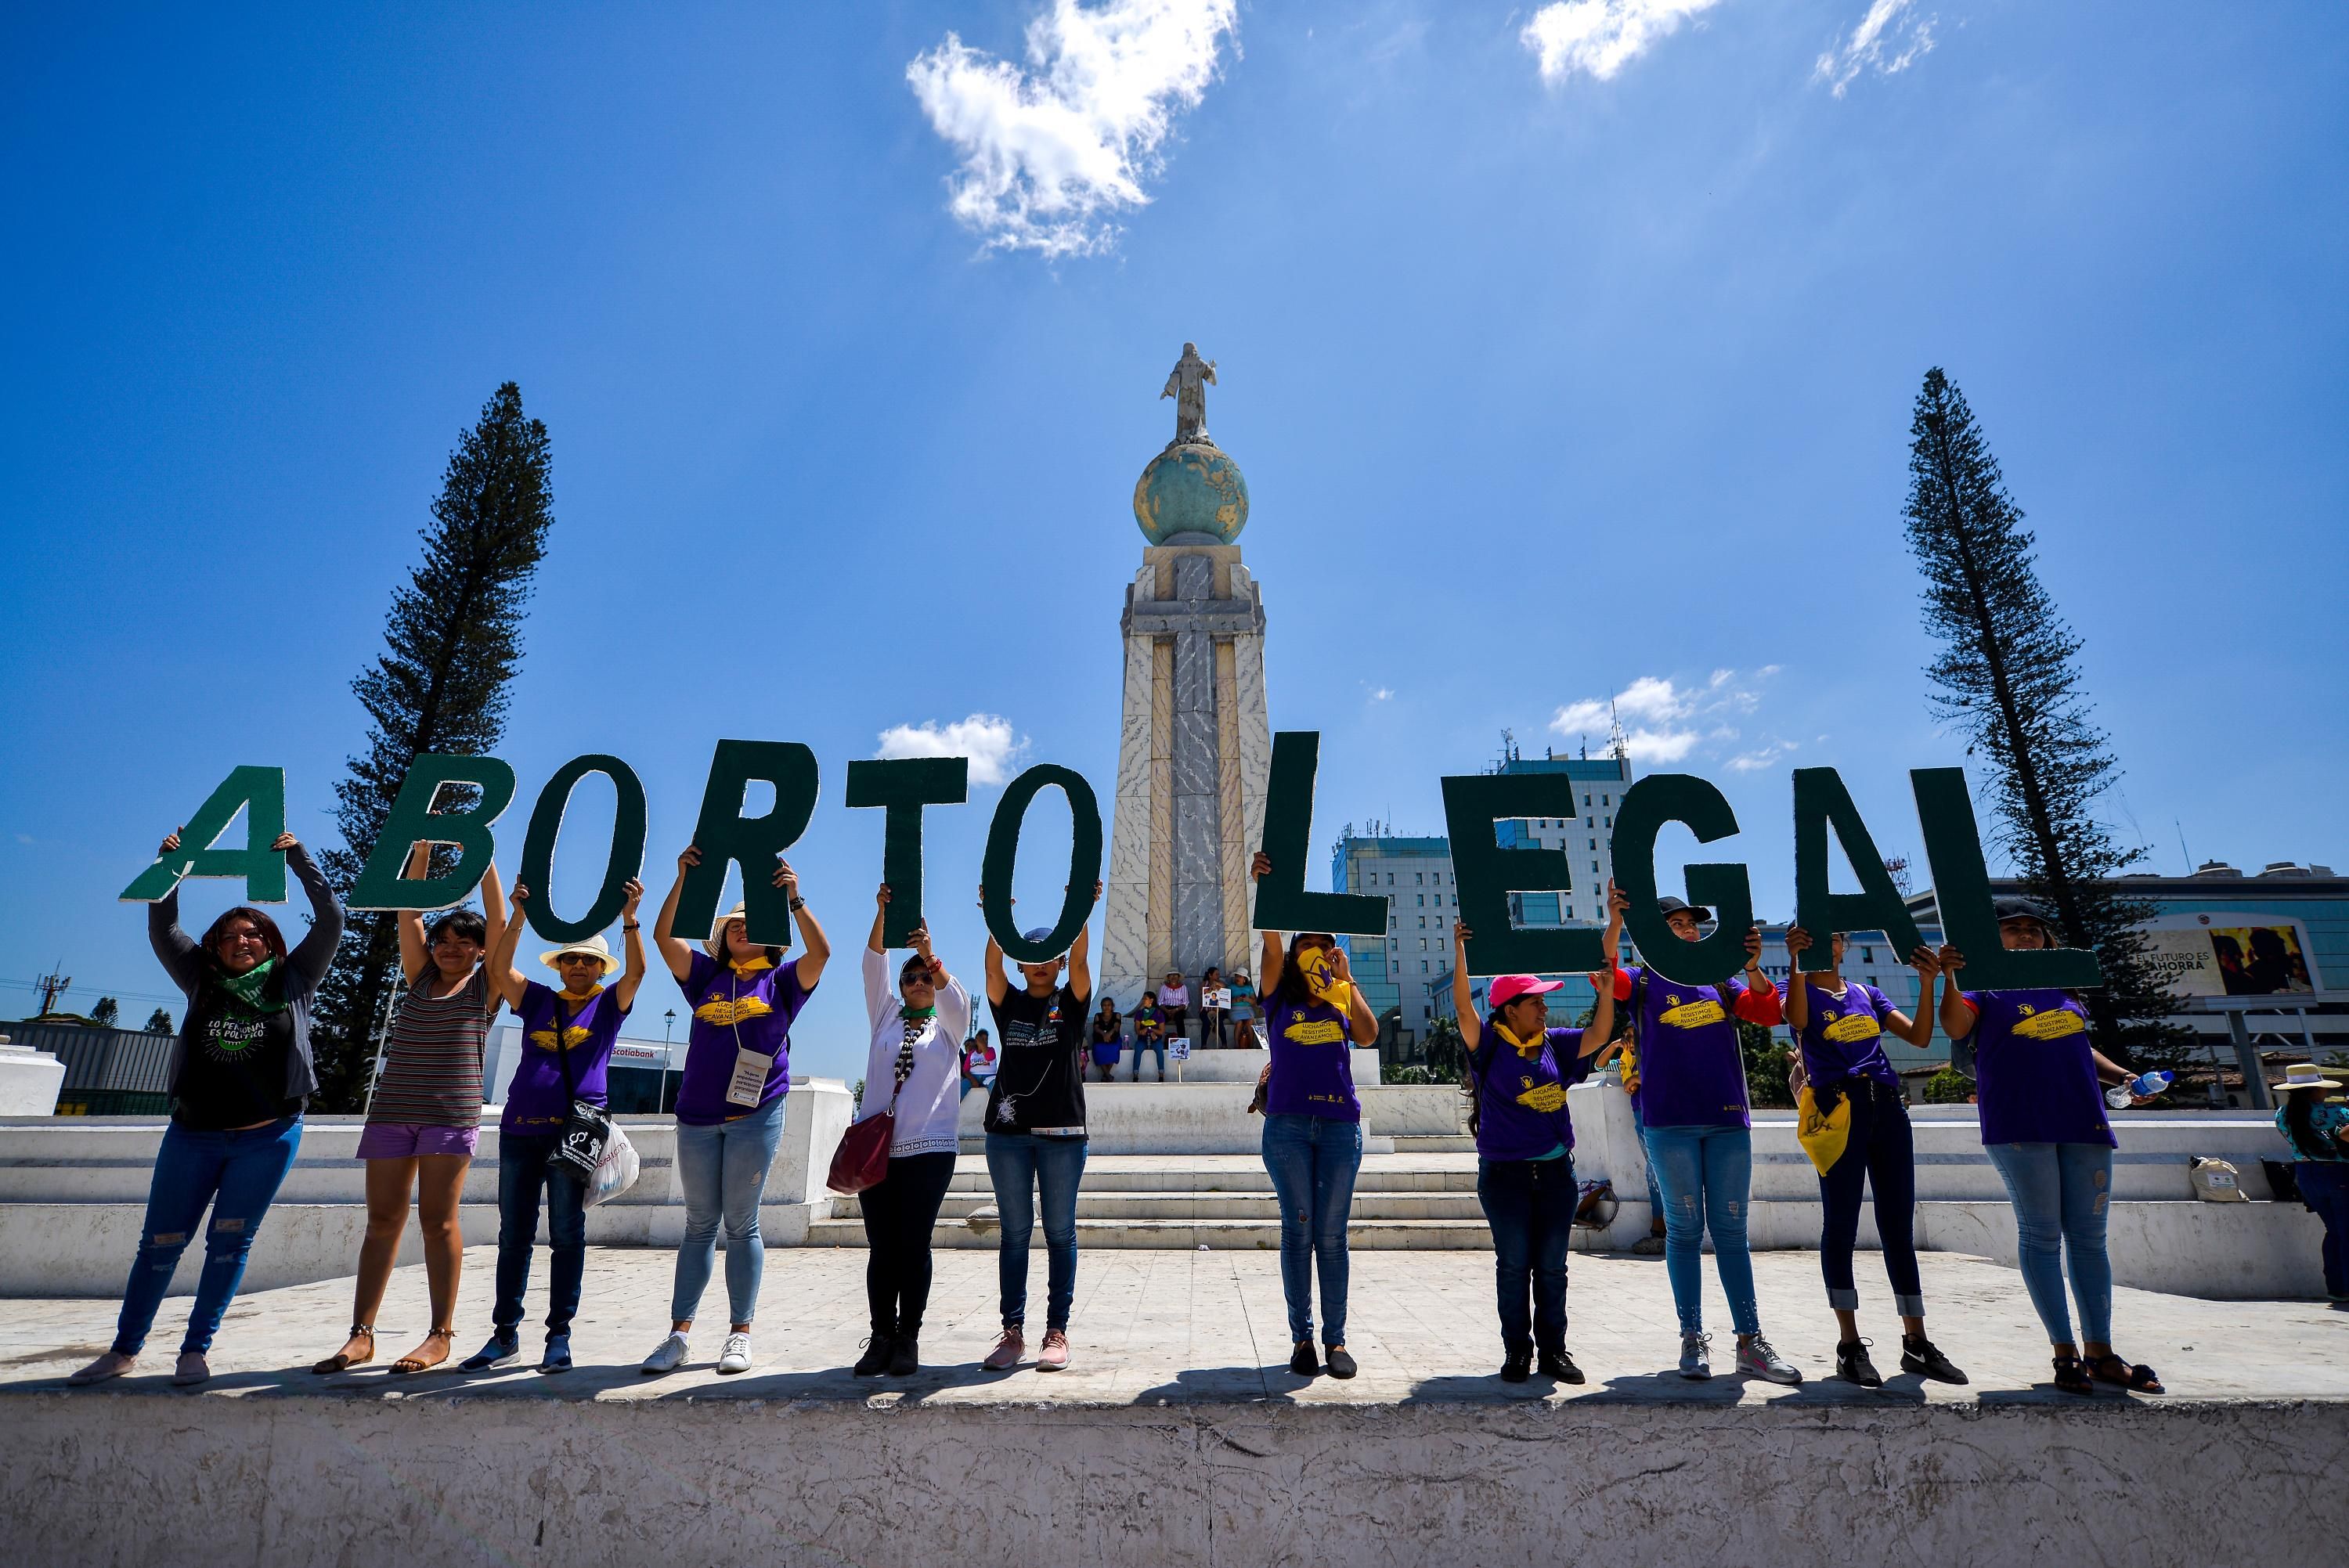 Pro choice protest in El Salvador